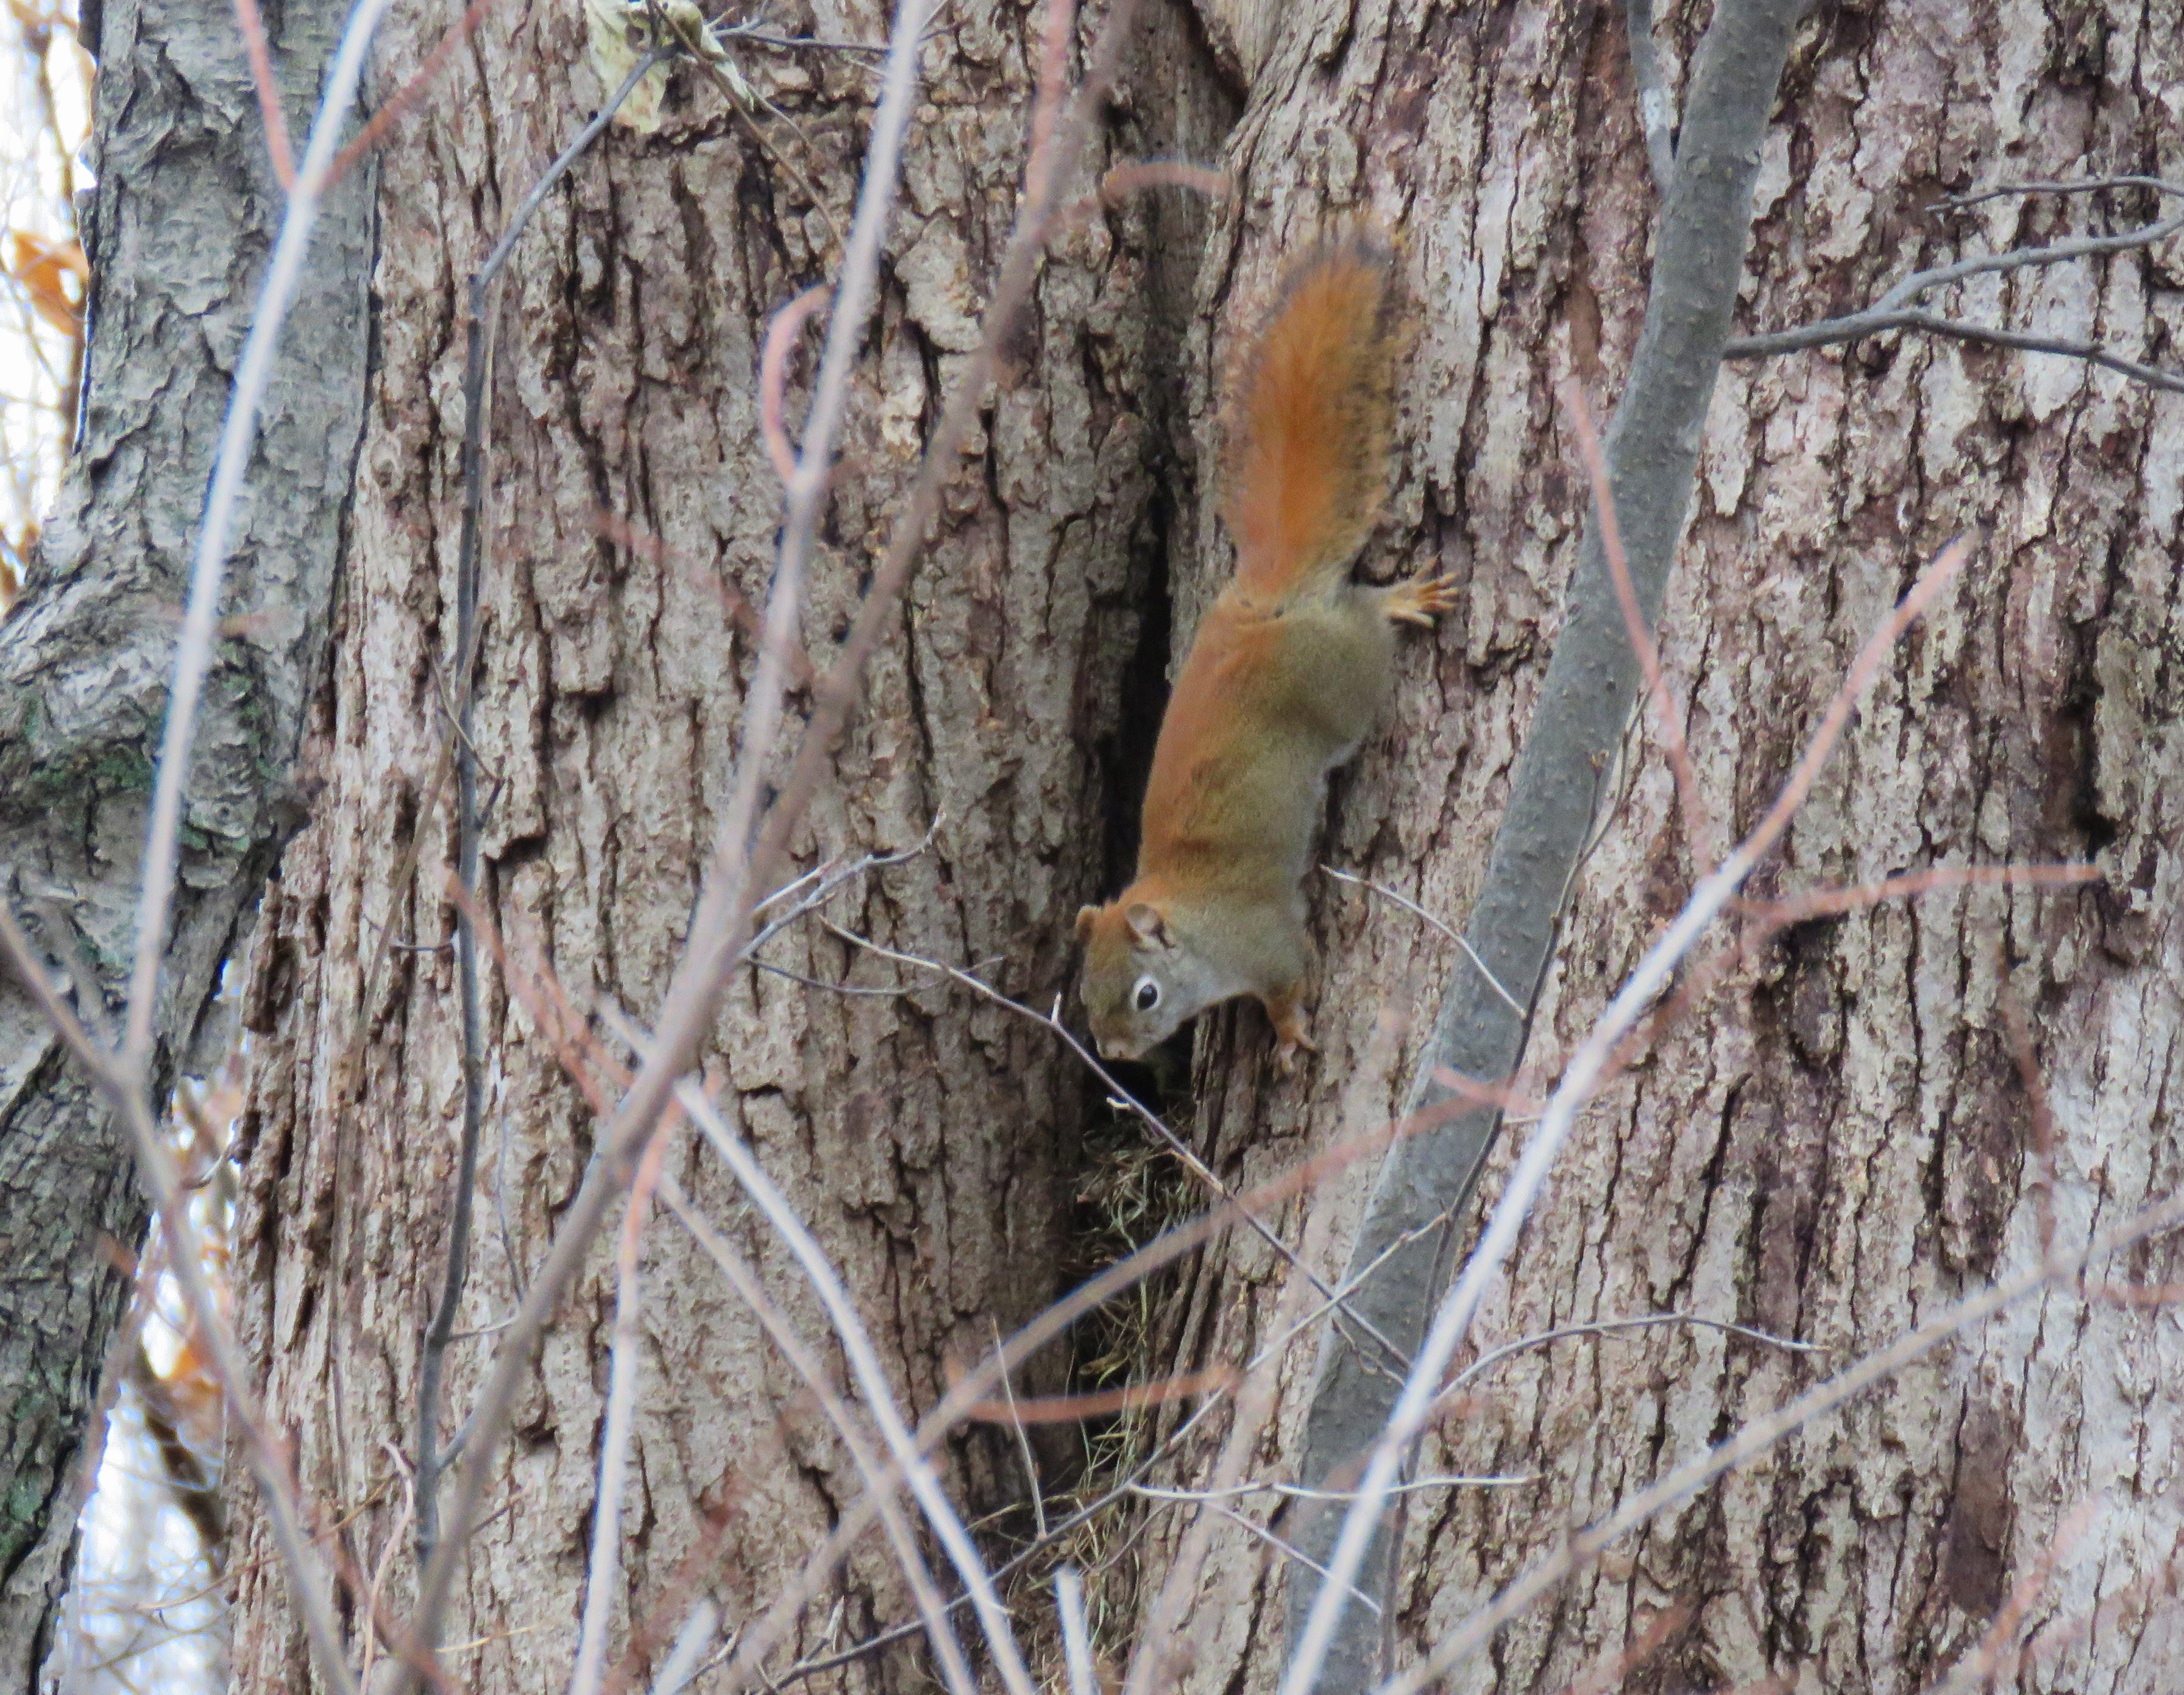 A squirrel runs head first down a tree.